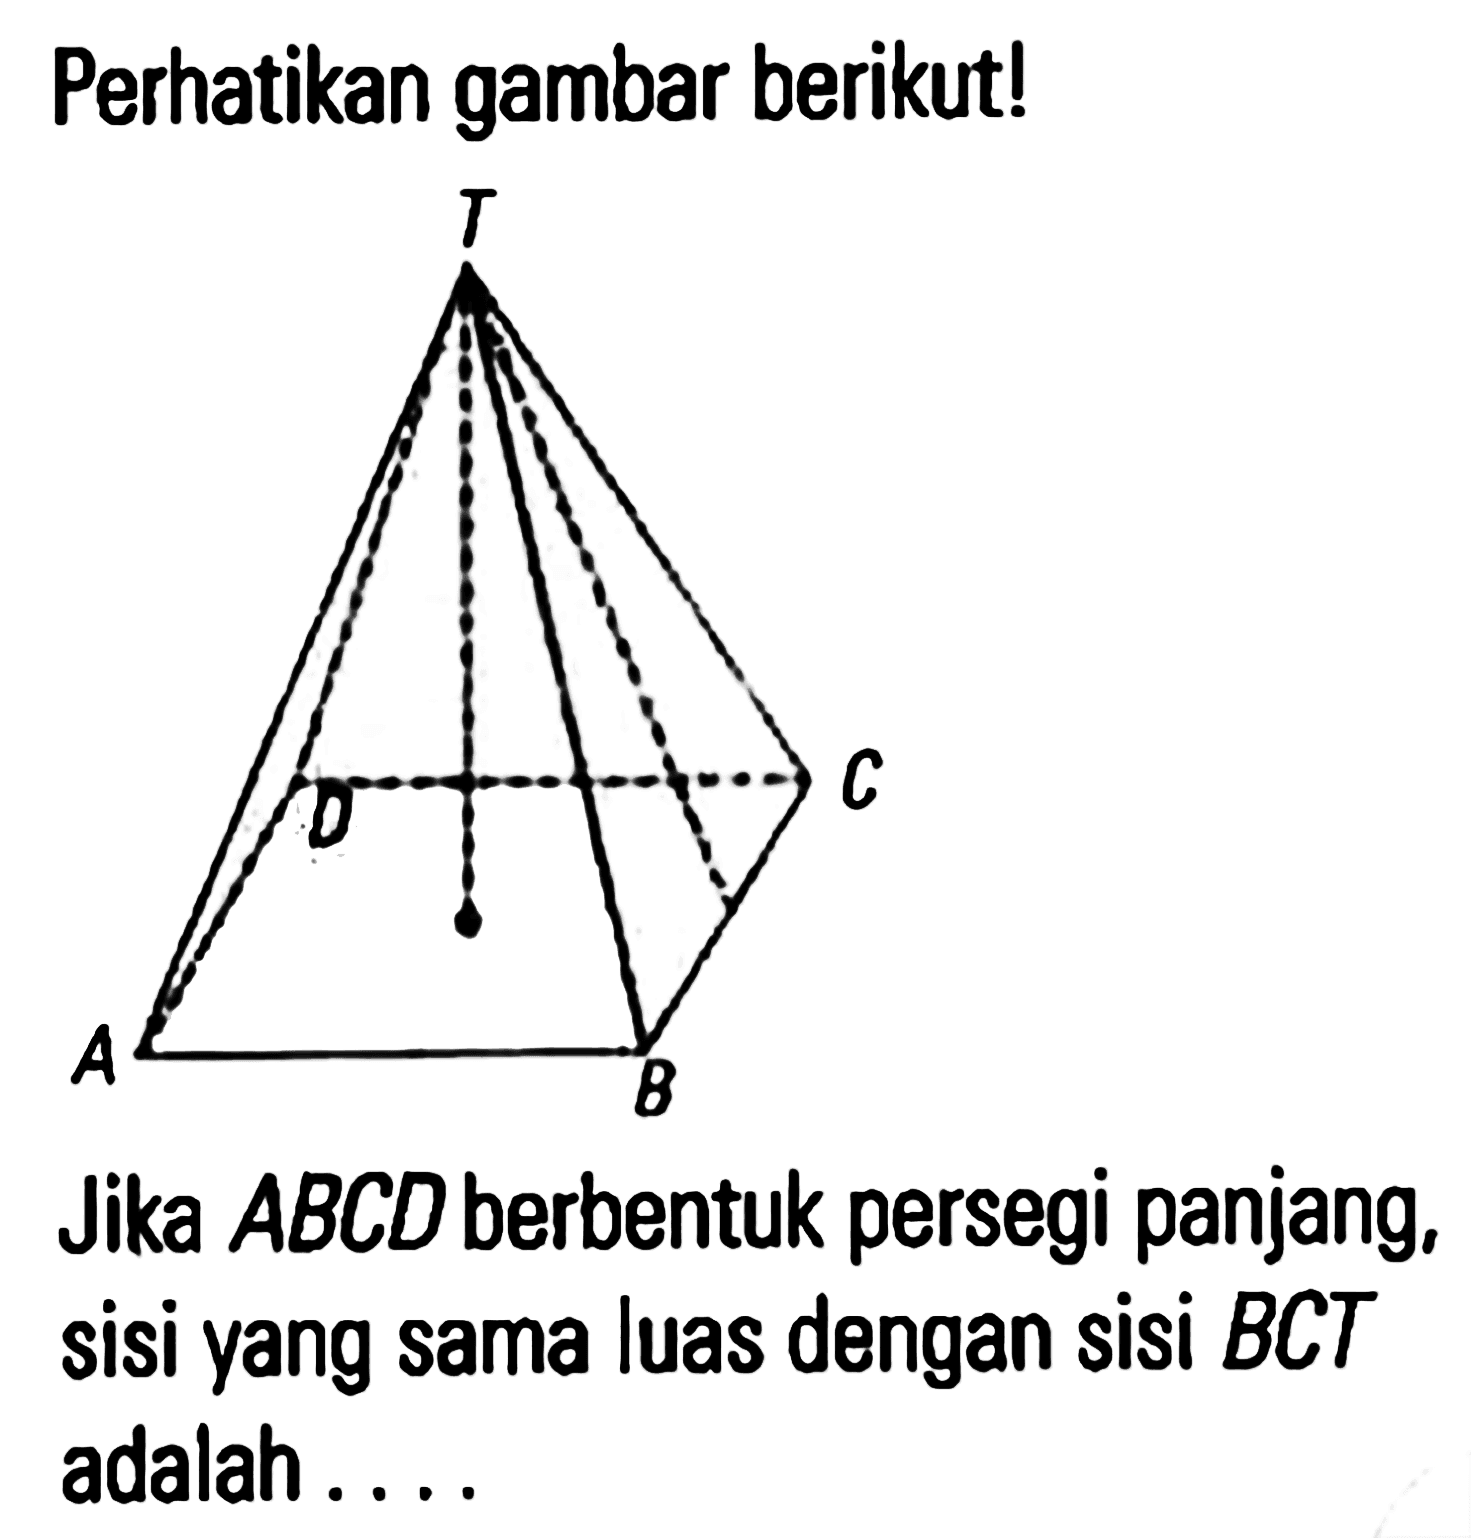 Perhatikan gambar berikut! Jika ABCD berbentuk persegi panjang, sisi yang sama luas dengan sisi BCT adalah....